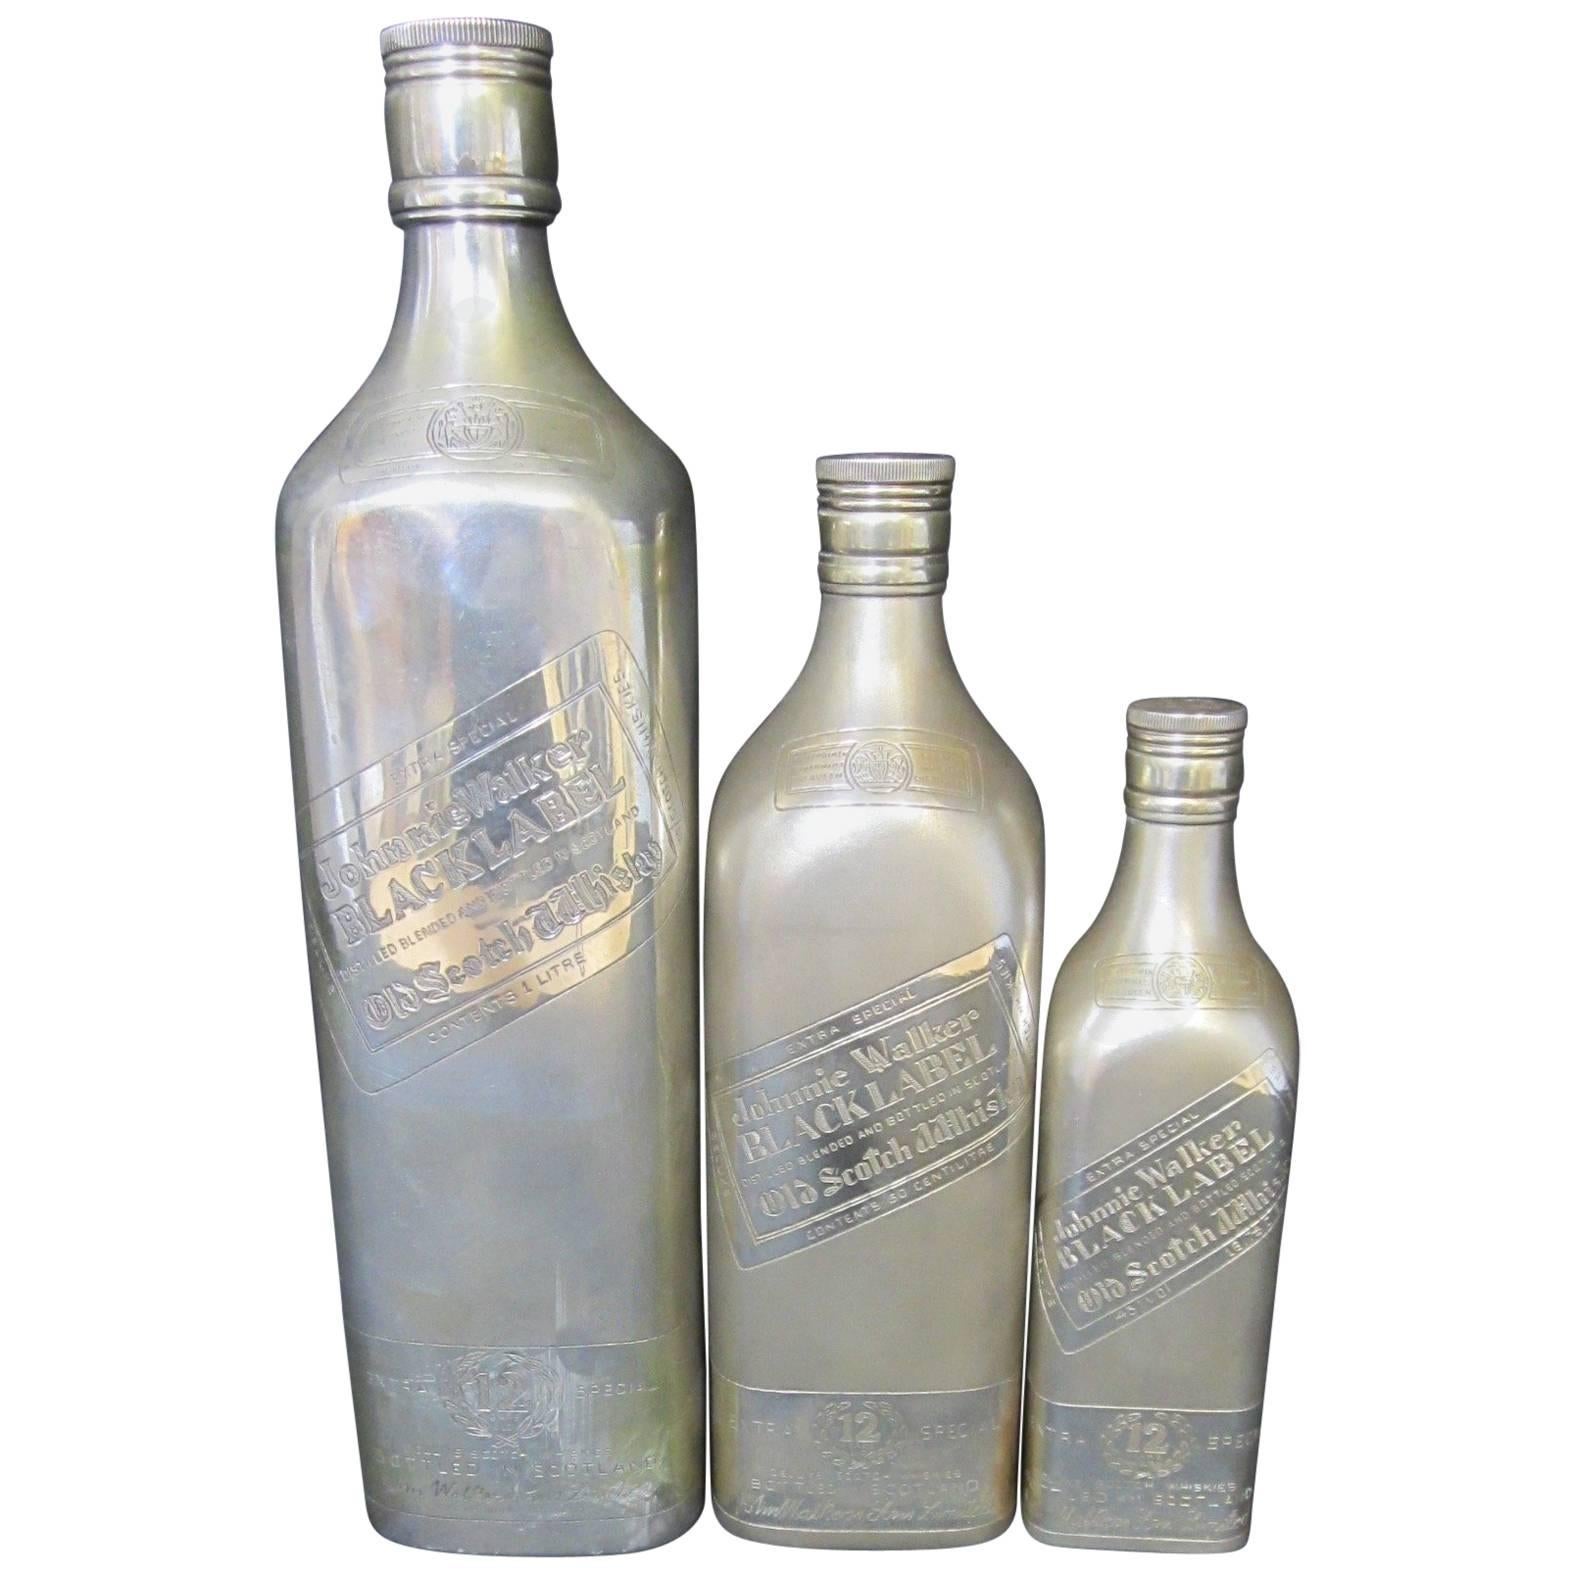 Silver Johnnie Walker Bottles